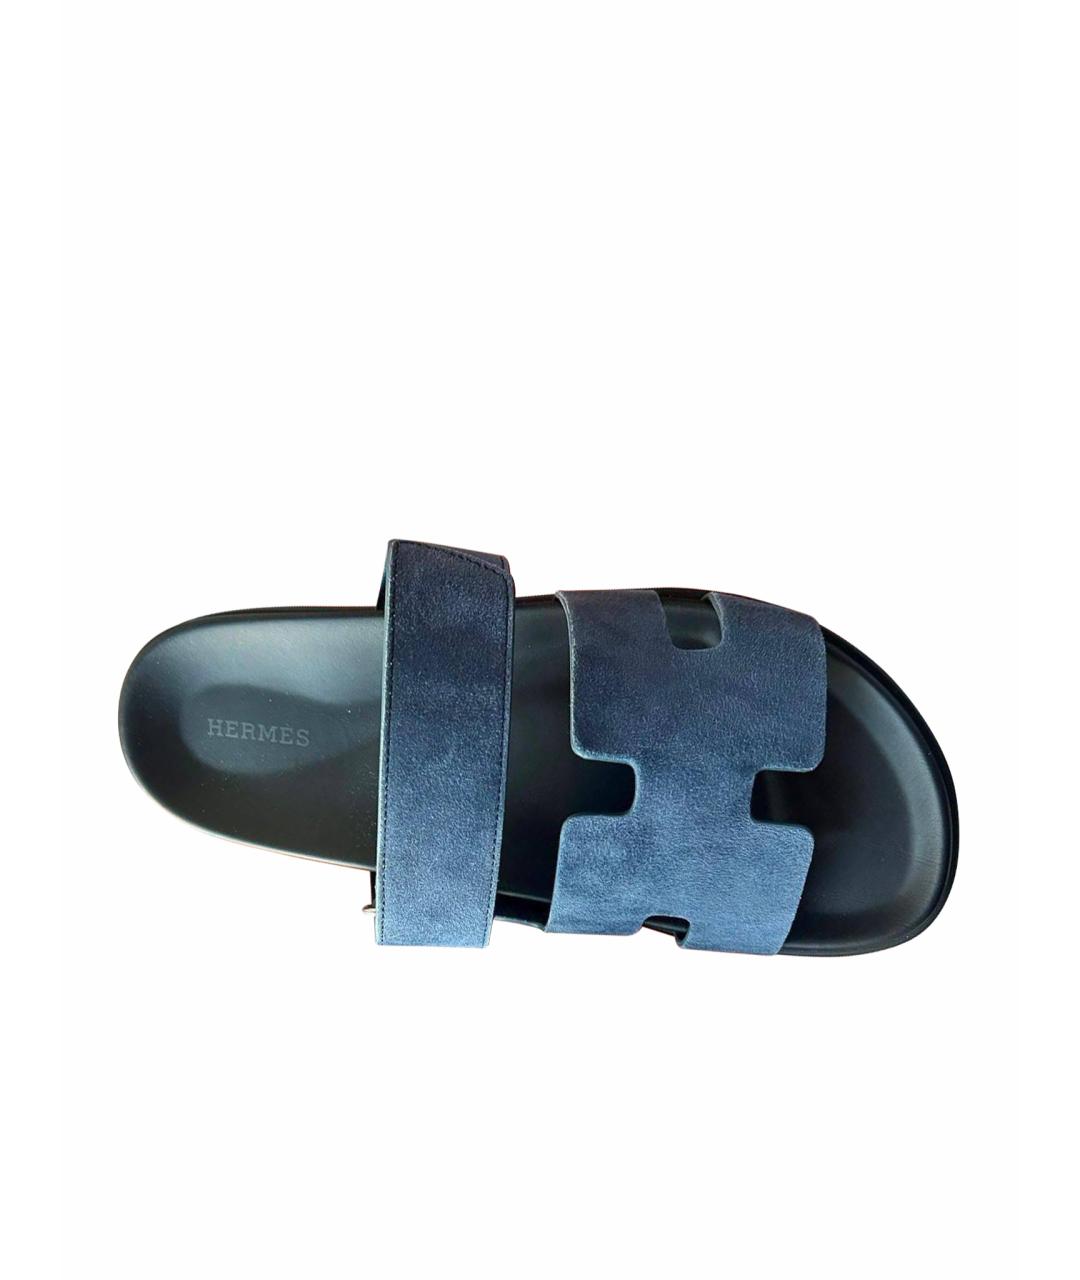 HERMES PRE-OWNED Темно-синие замшевые сандалии, фото 1